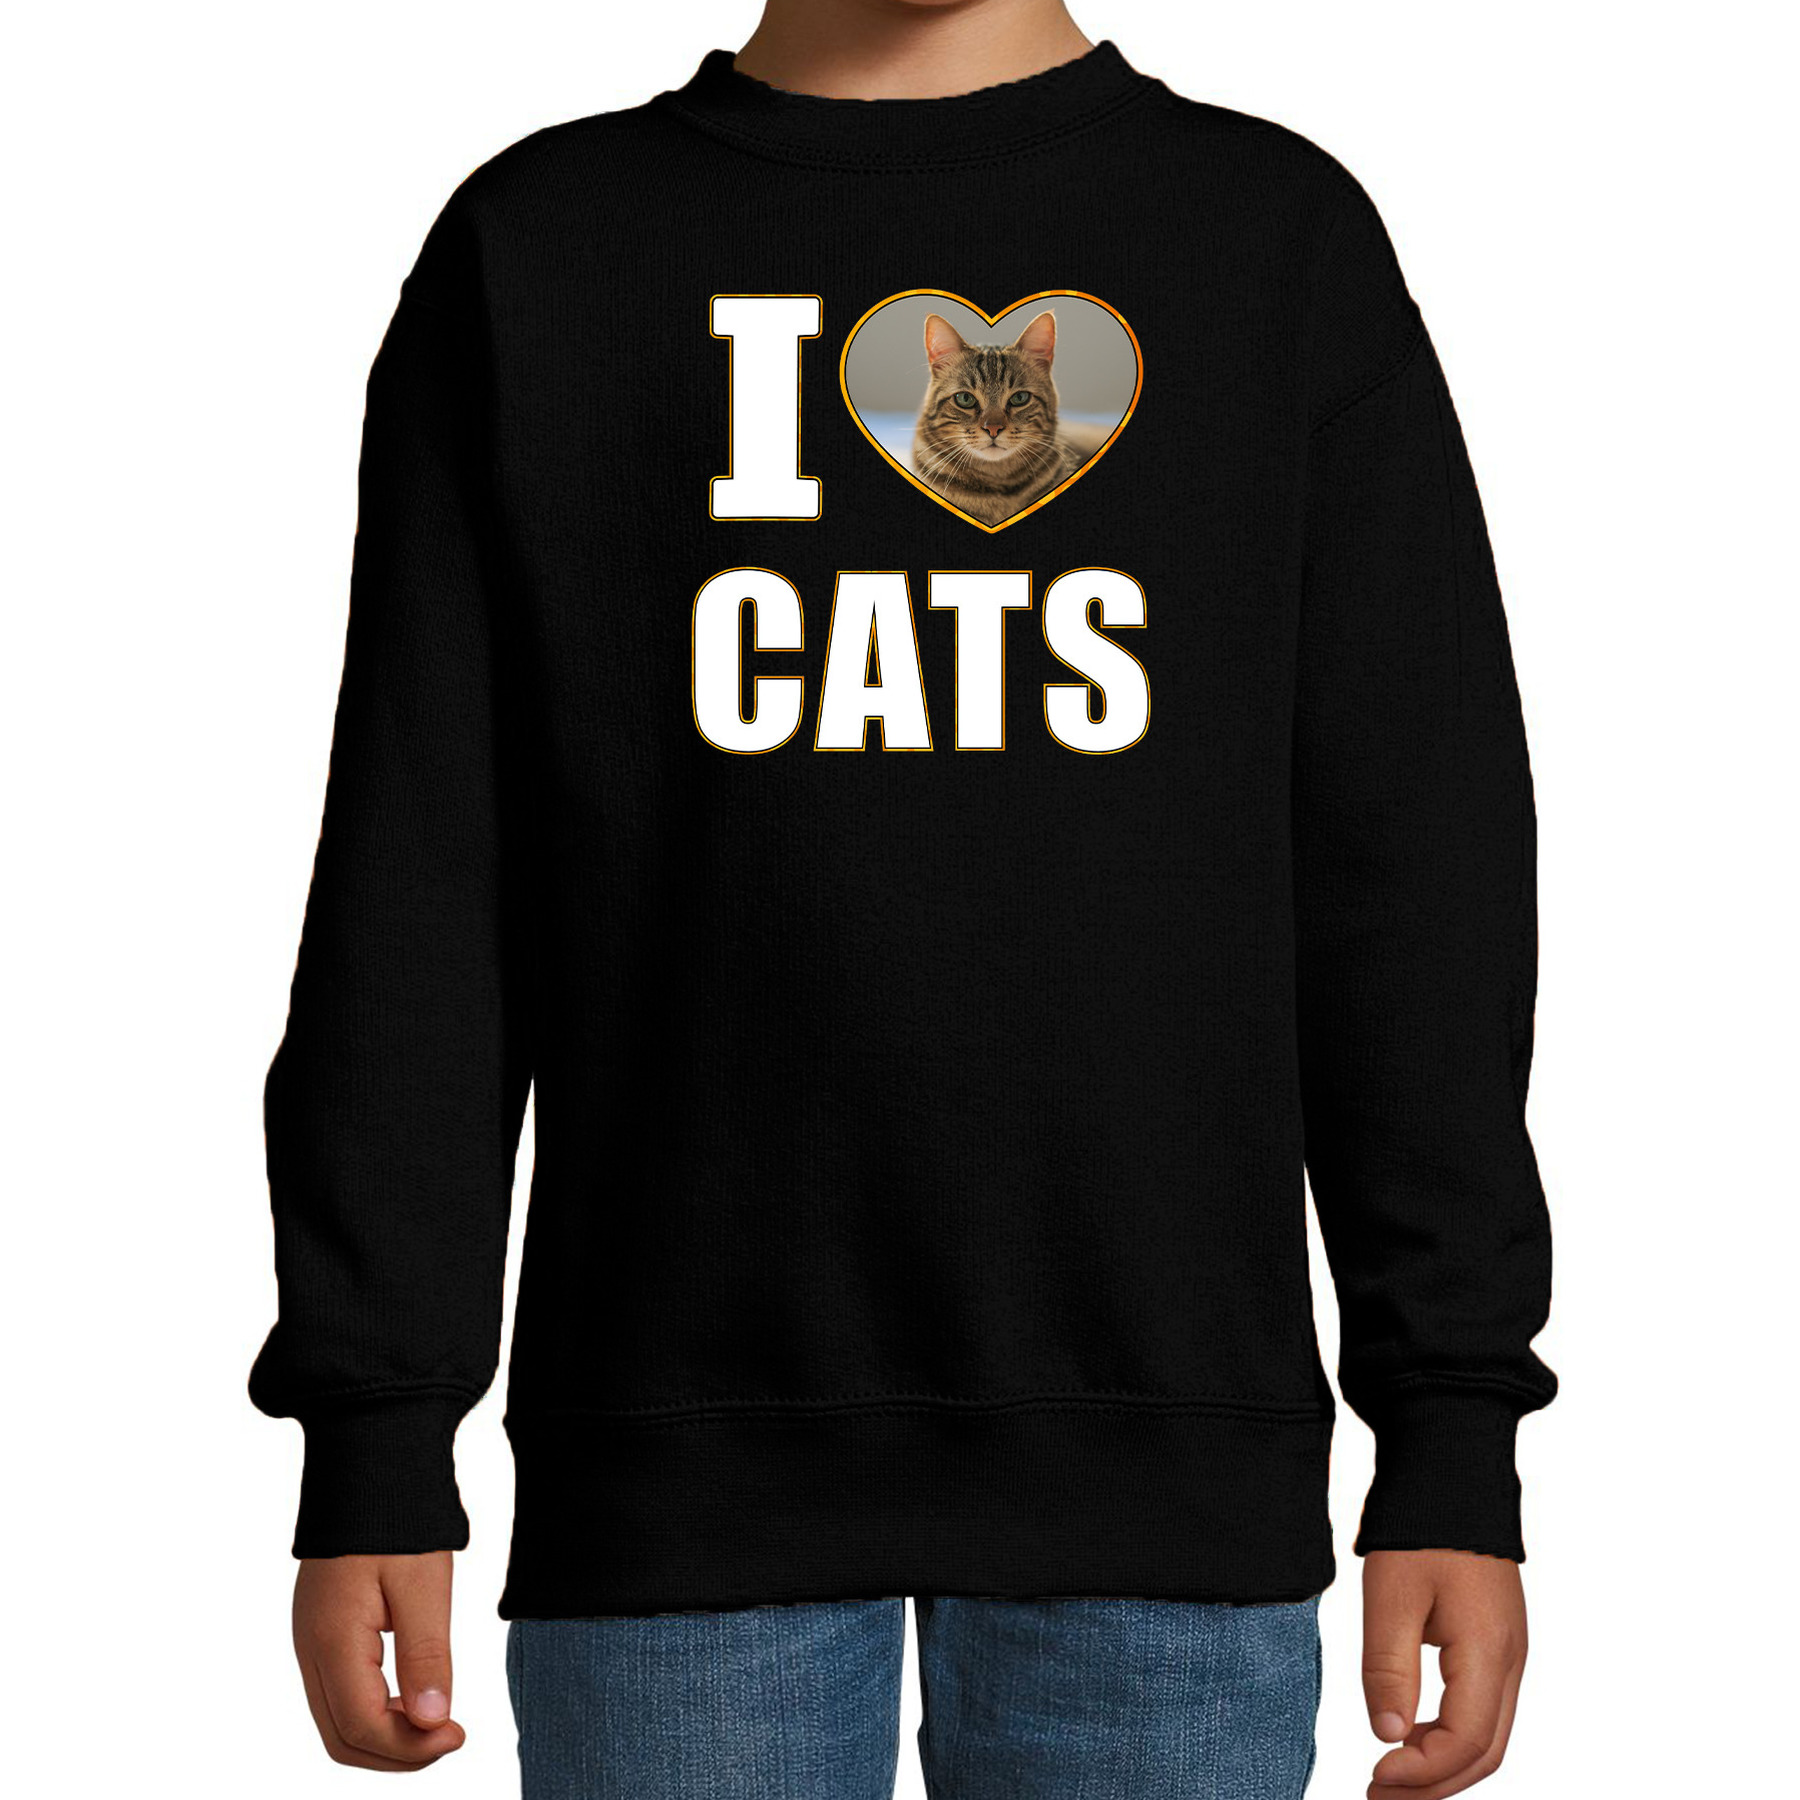 I love cats foto sweater zwart voor kinderen cadeau trui katten liefhebber